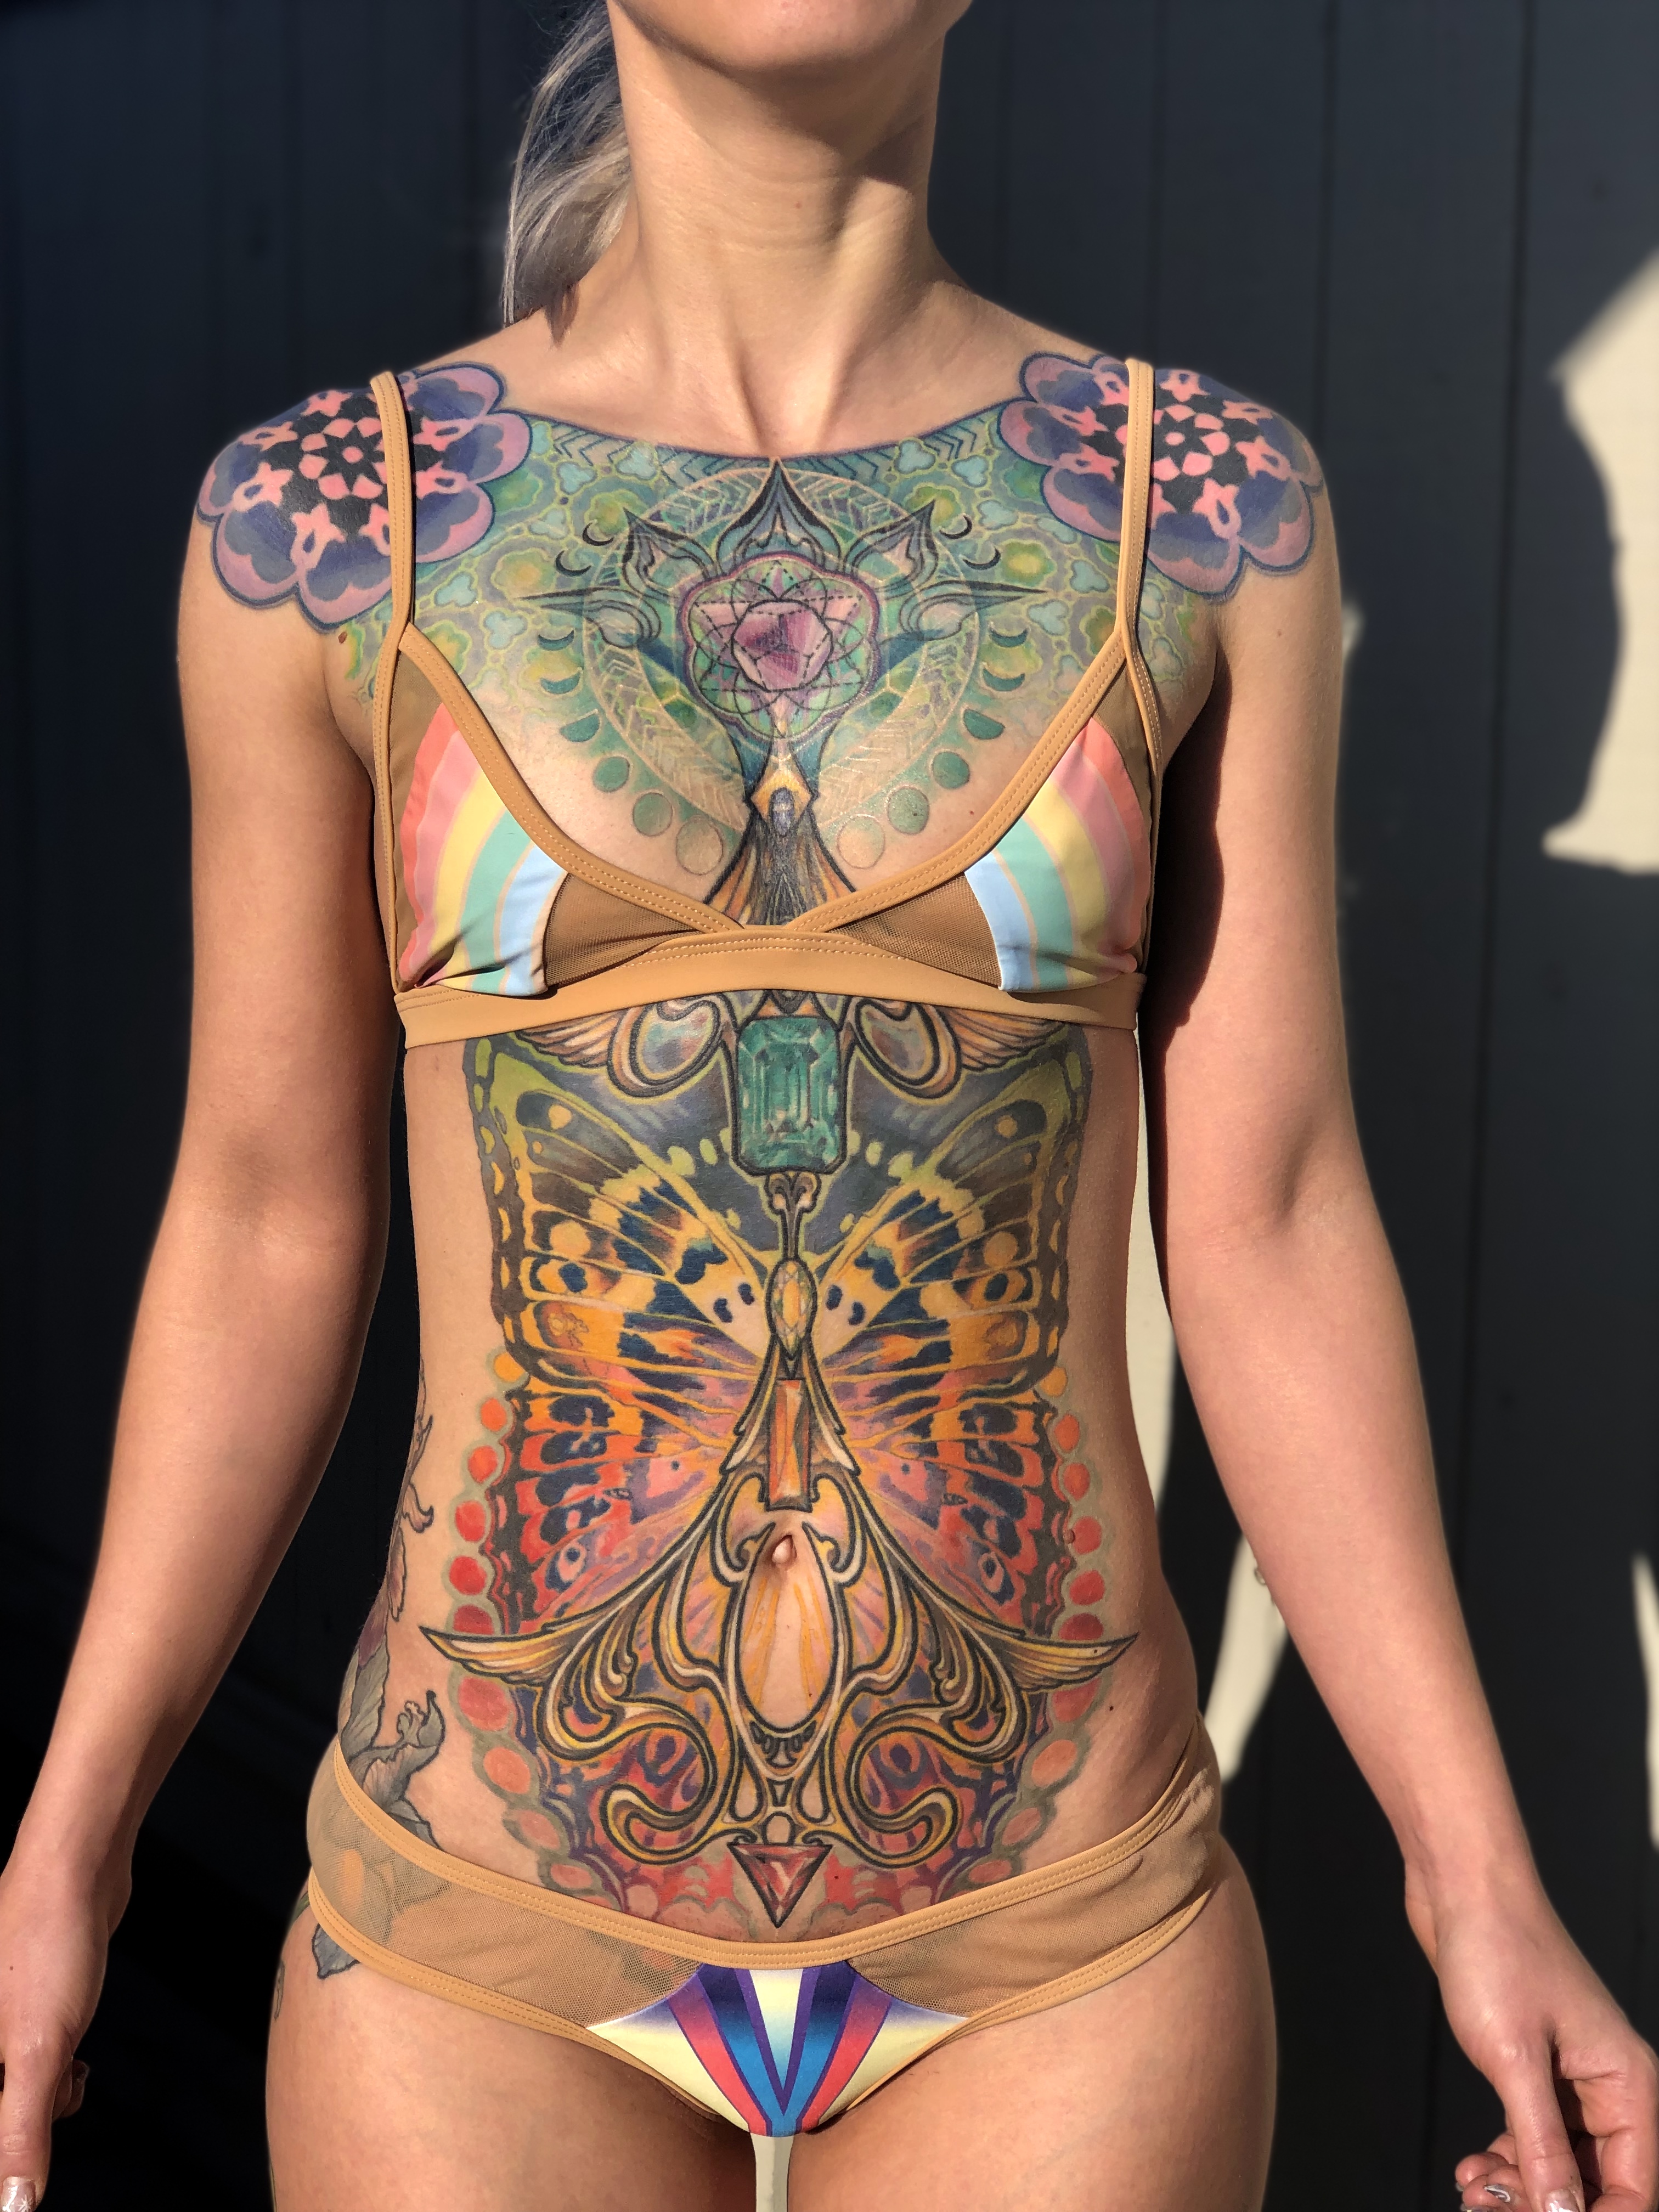 Lars Widell Tattoo 2019 Okanagan Tattoo Show & Brewfest Artist